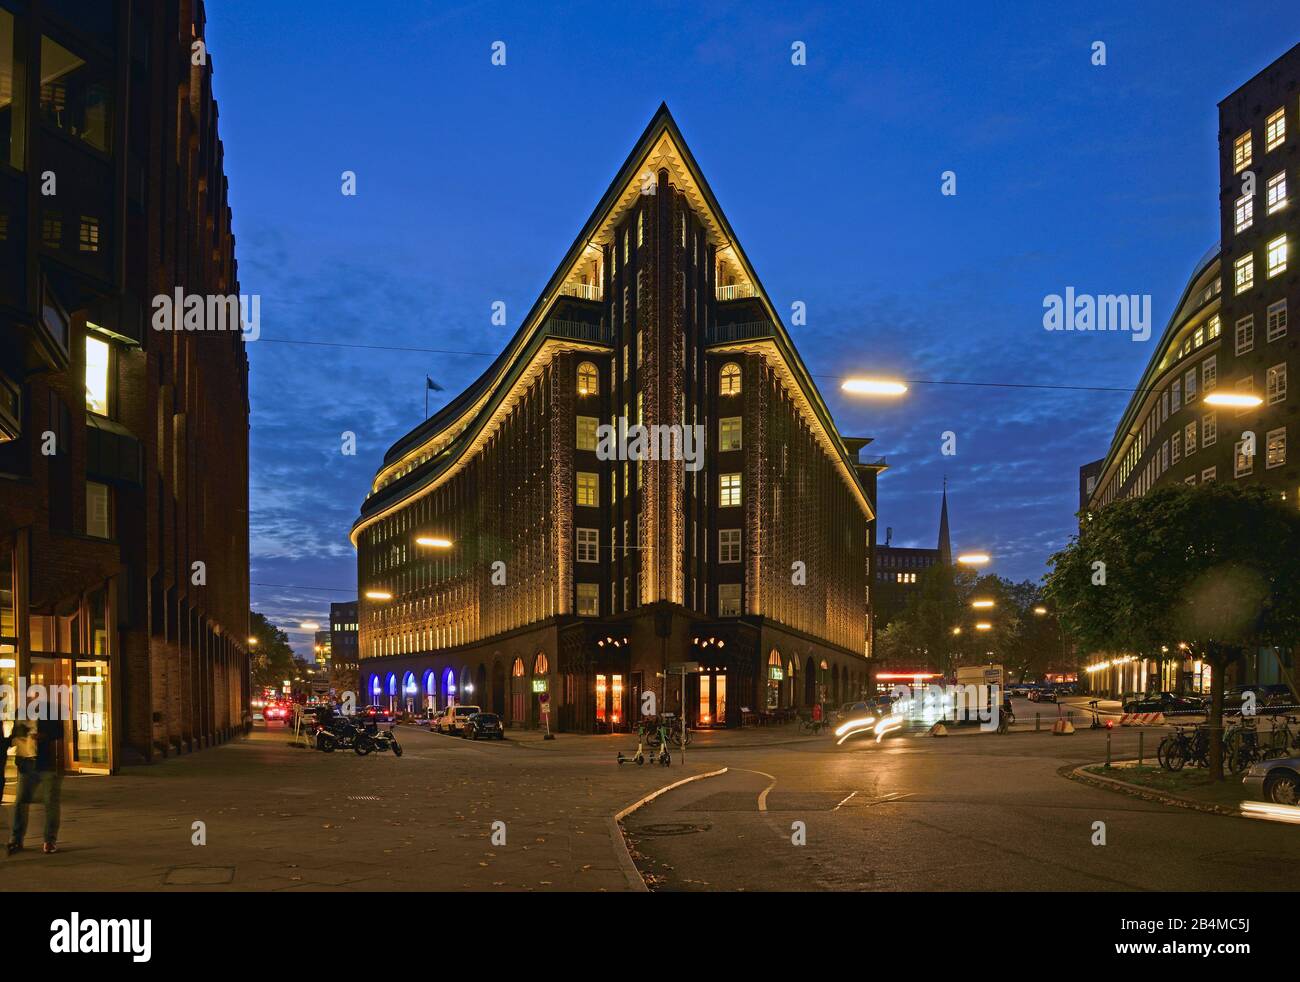 Europe, Allemagne, Hambourg, Ville, Kontorhausviertel, Chilehaus, façade clinker, construite de 1922 à 1924 par Fritz Höger, site du patrimoine mondial, nuit, extrémité pignon Banque D'Images